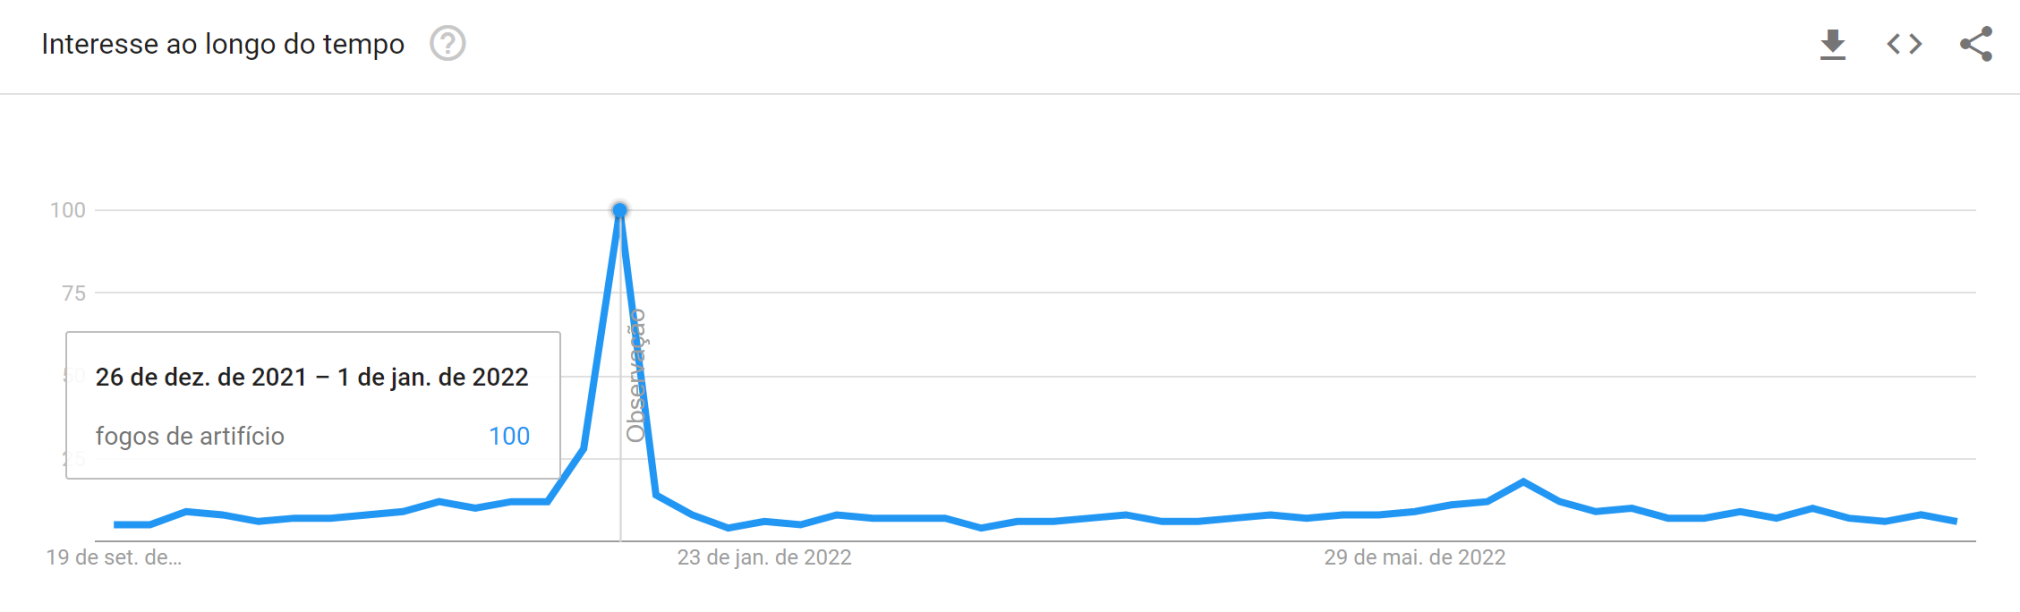 volume de pesquisa de palavras-chave - gráfico do google trends